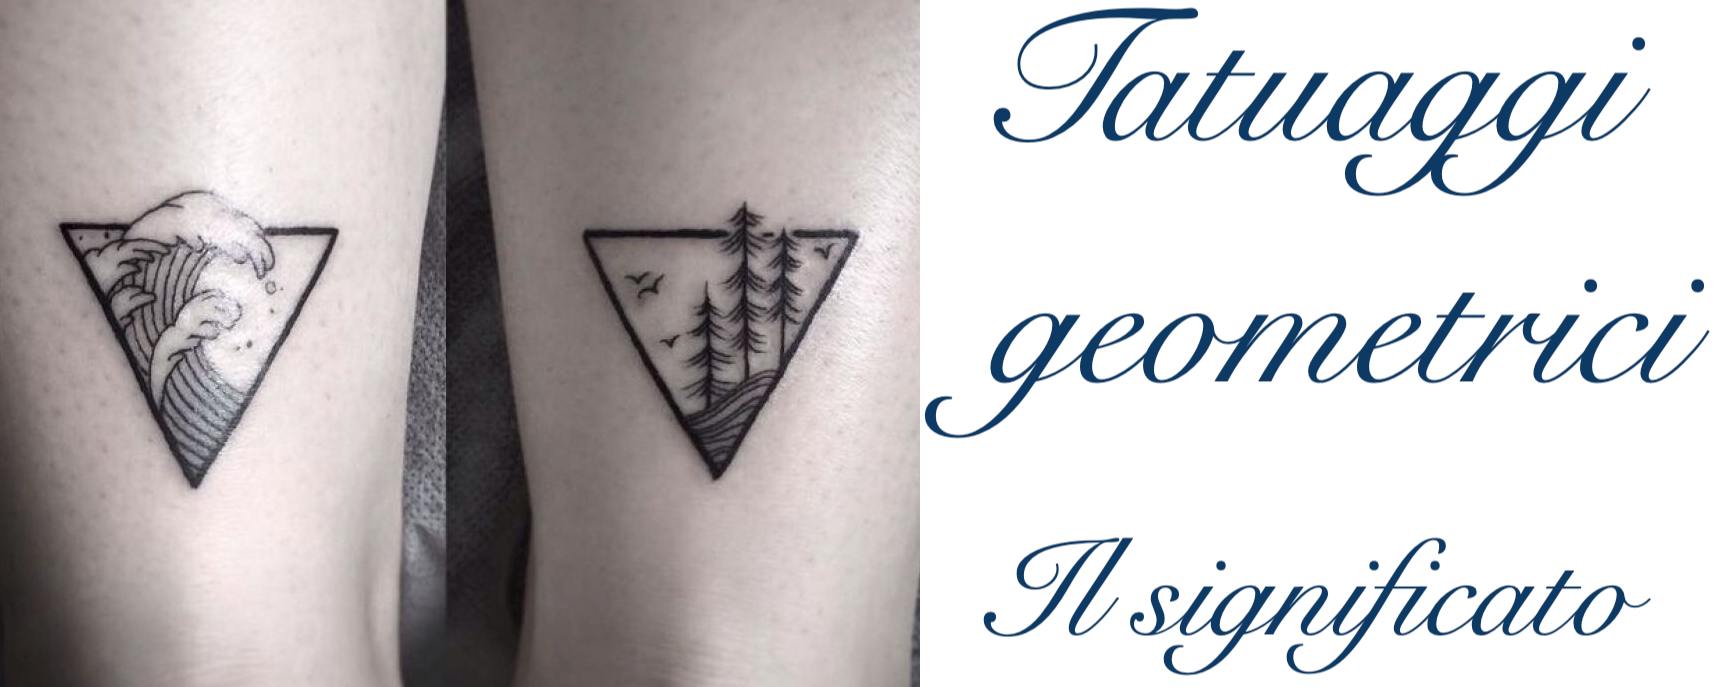 Tatuaggio Tattoo Figure Geometriche Significato